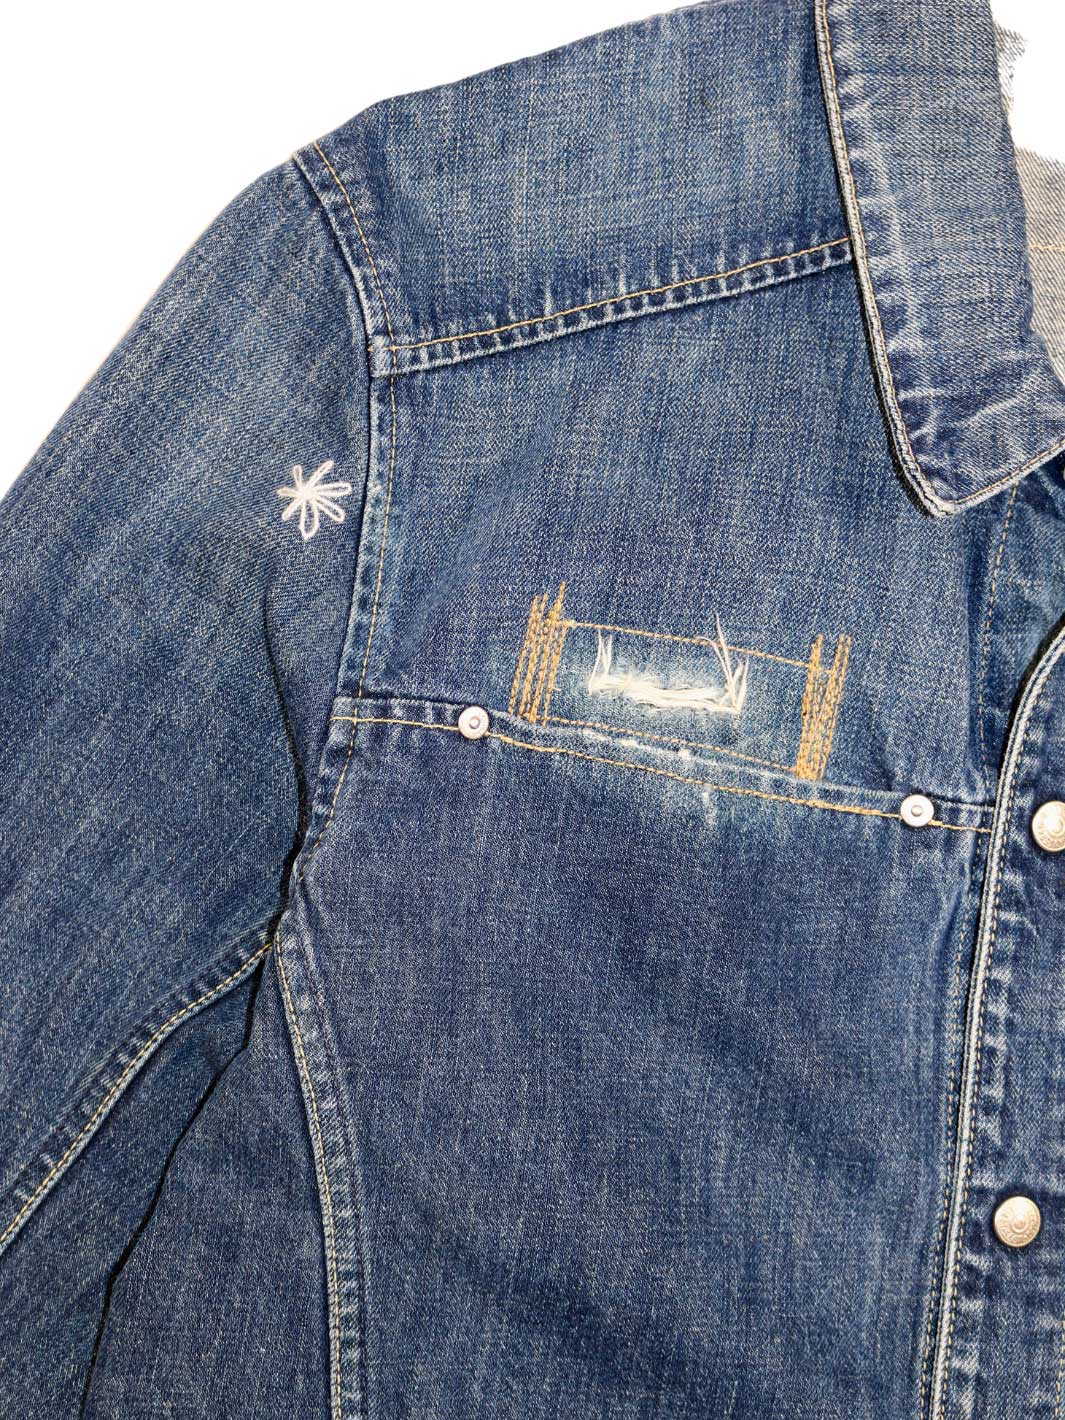 Herren upcyceled  Jeansjacke mit Leistentasche auf echter Seite diverse Repair Stitchings  